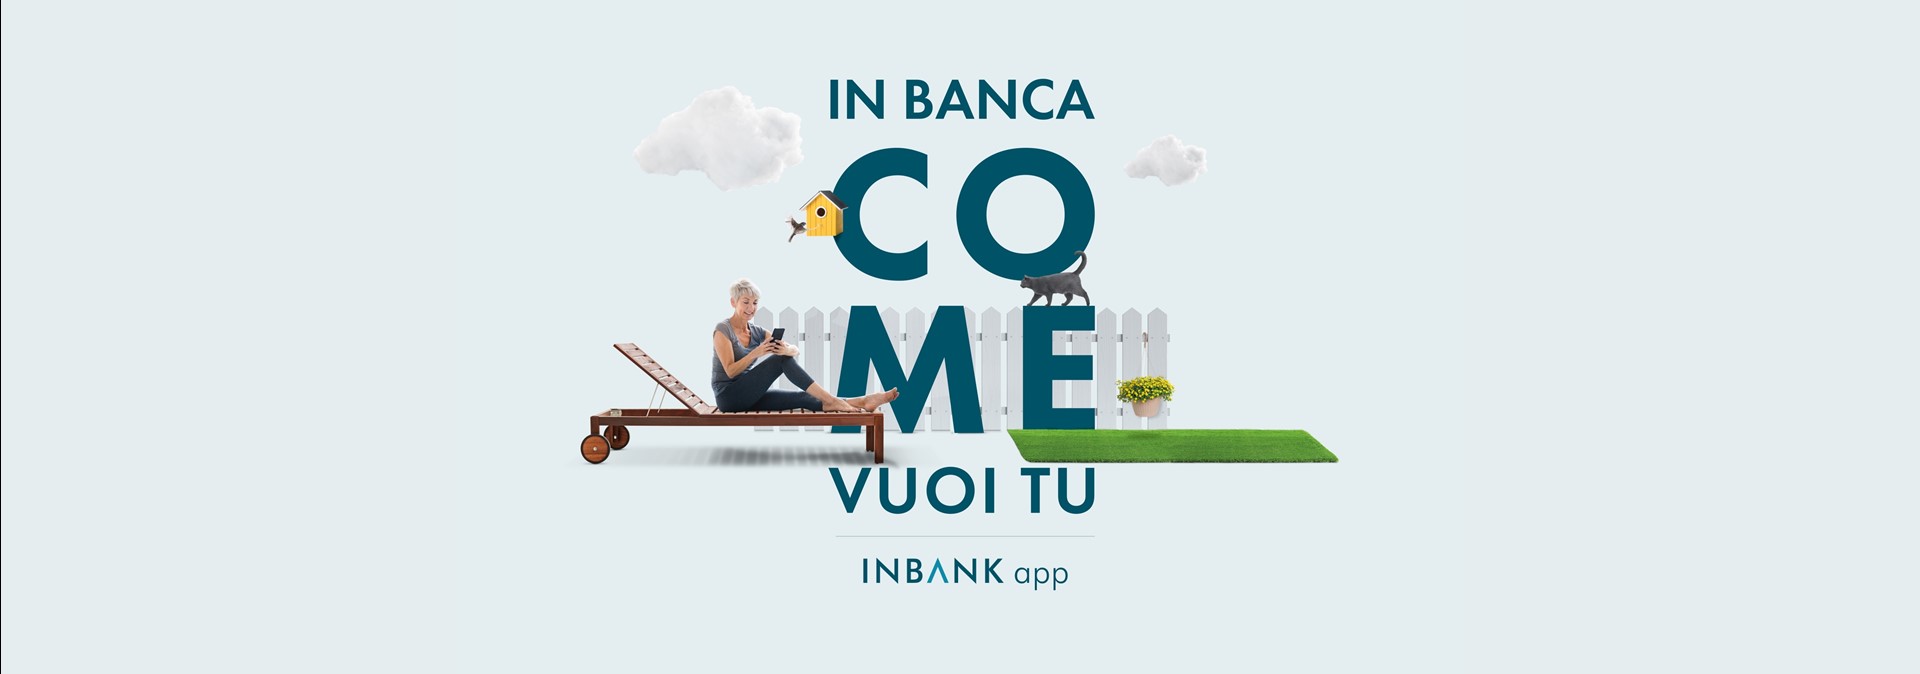 inbank app.jpg